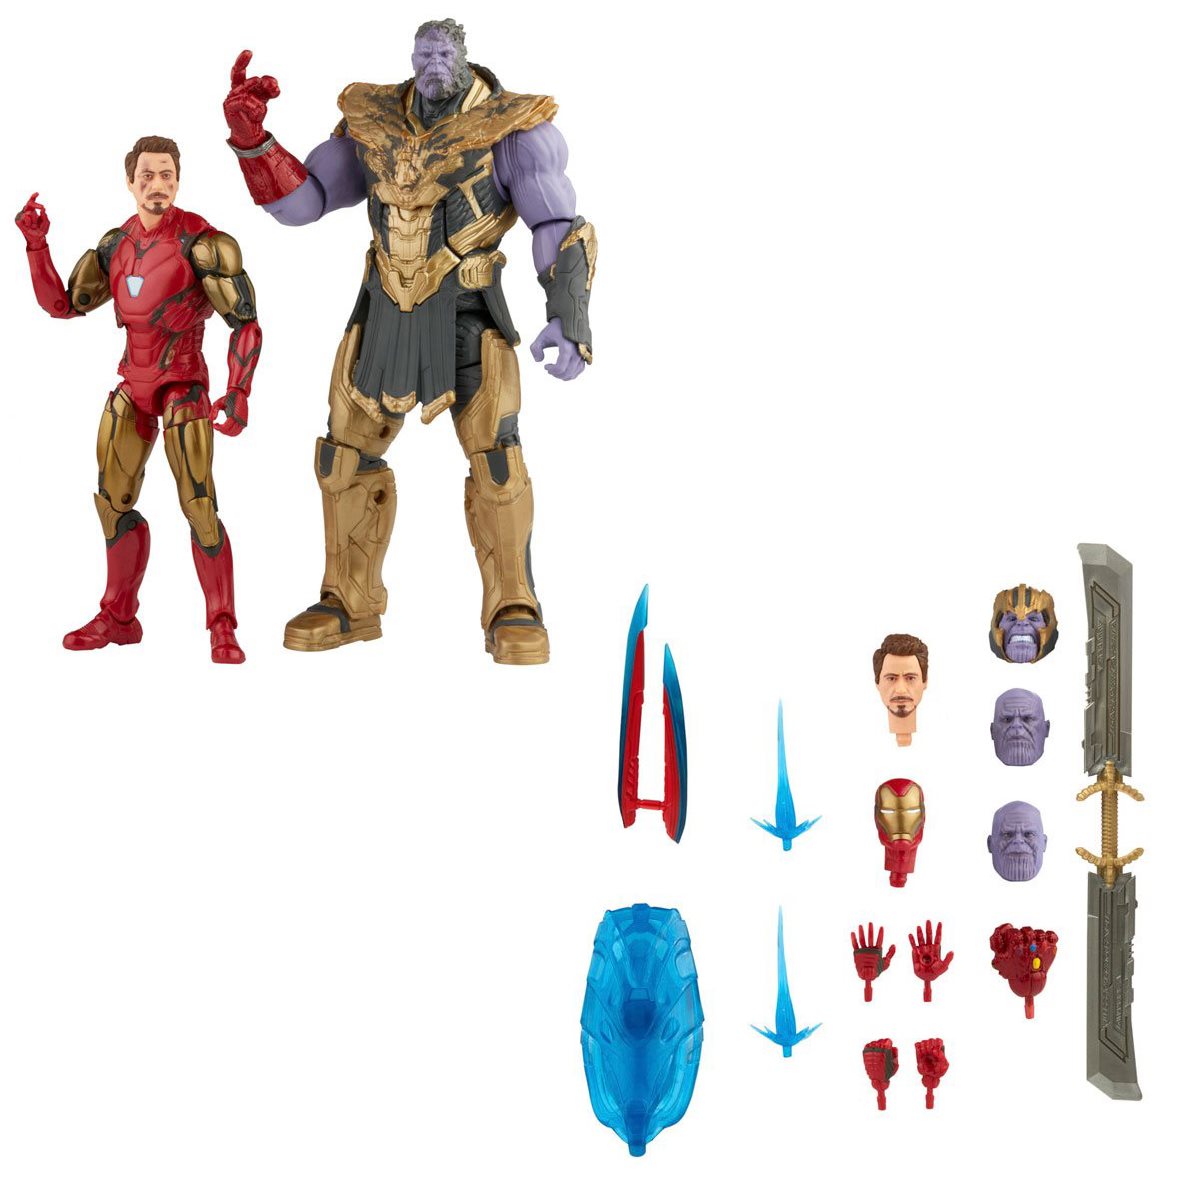 Avengers: Endgame Marvel Legends The Infinity Saga Iron Man Mark 85 & Thanos Two-Pack